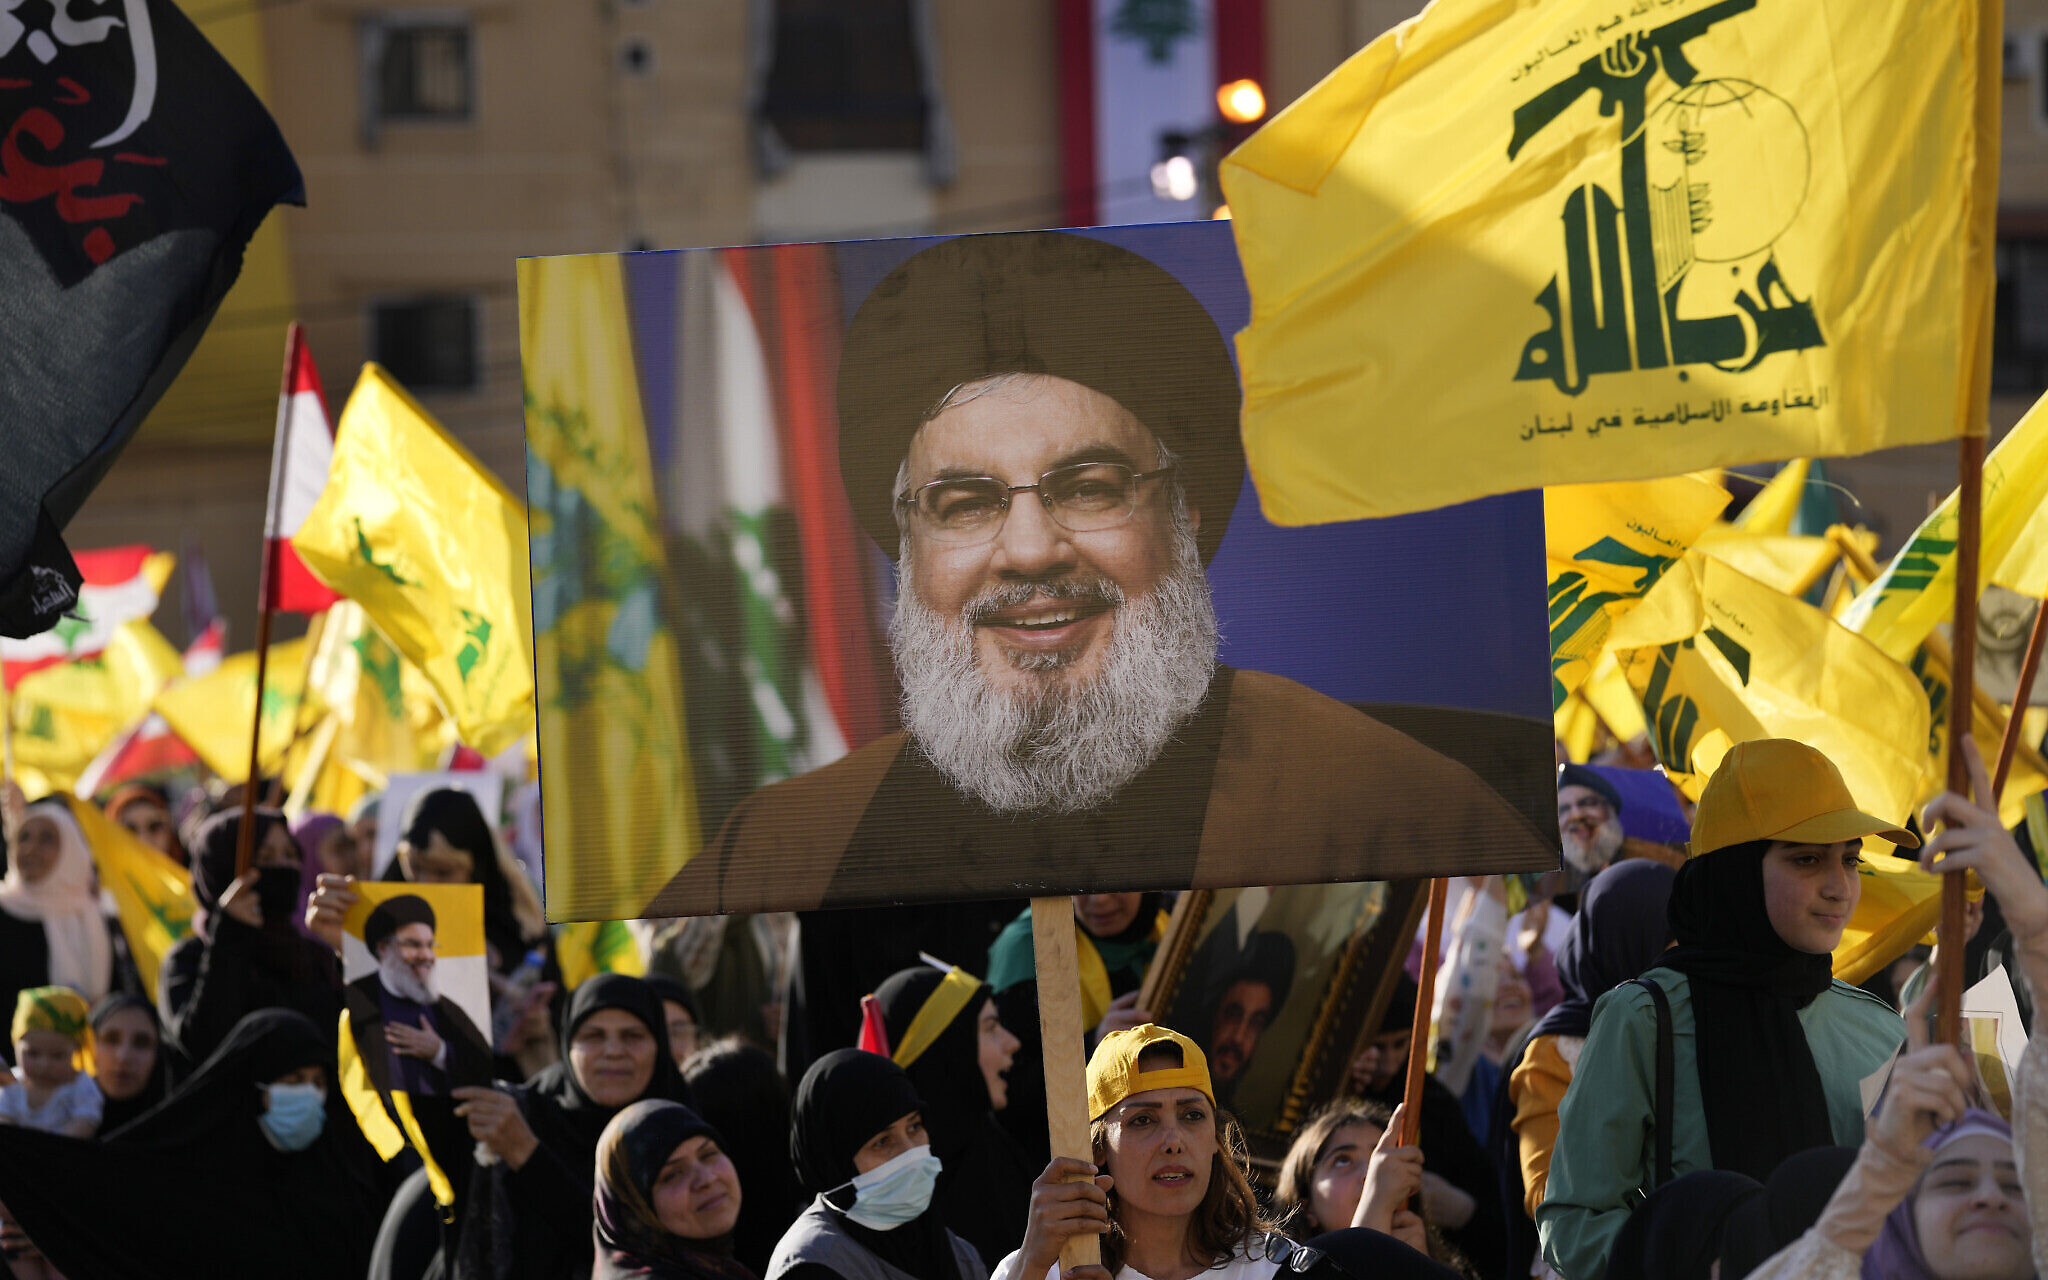 İsrail Basını: Hizbullah'a Engel Olmalıyız